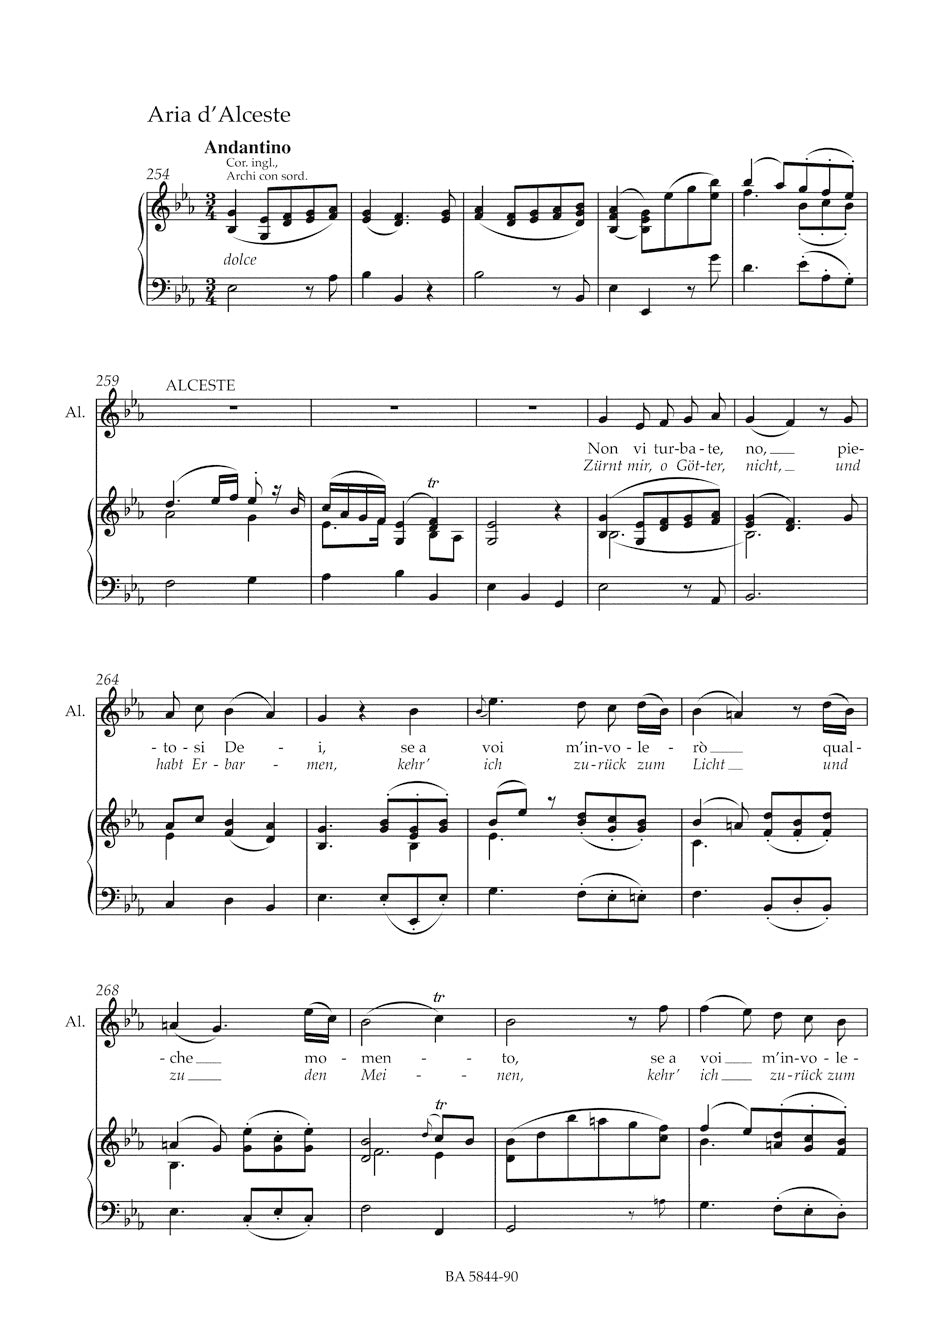 Gluck Alceste -Tragedia per musica in three acts- (Vienna version 1767)